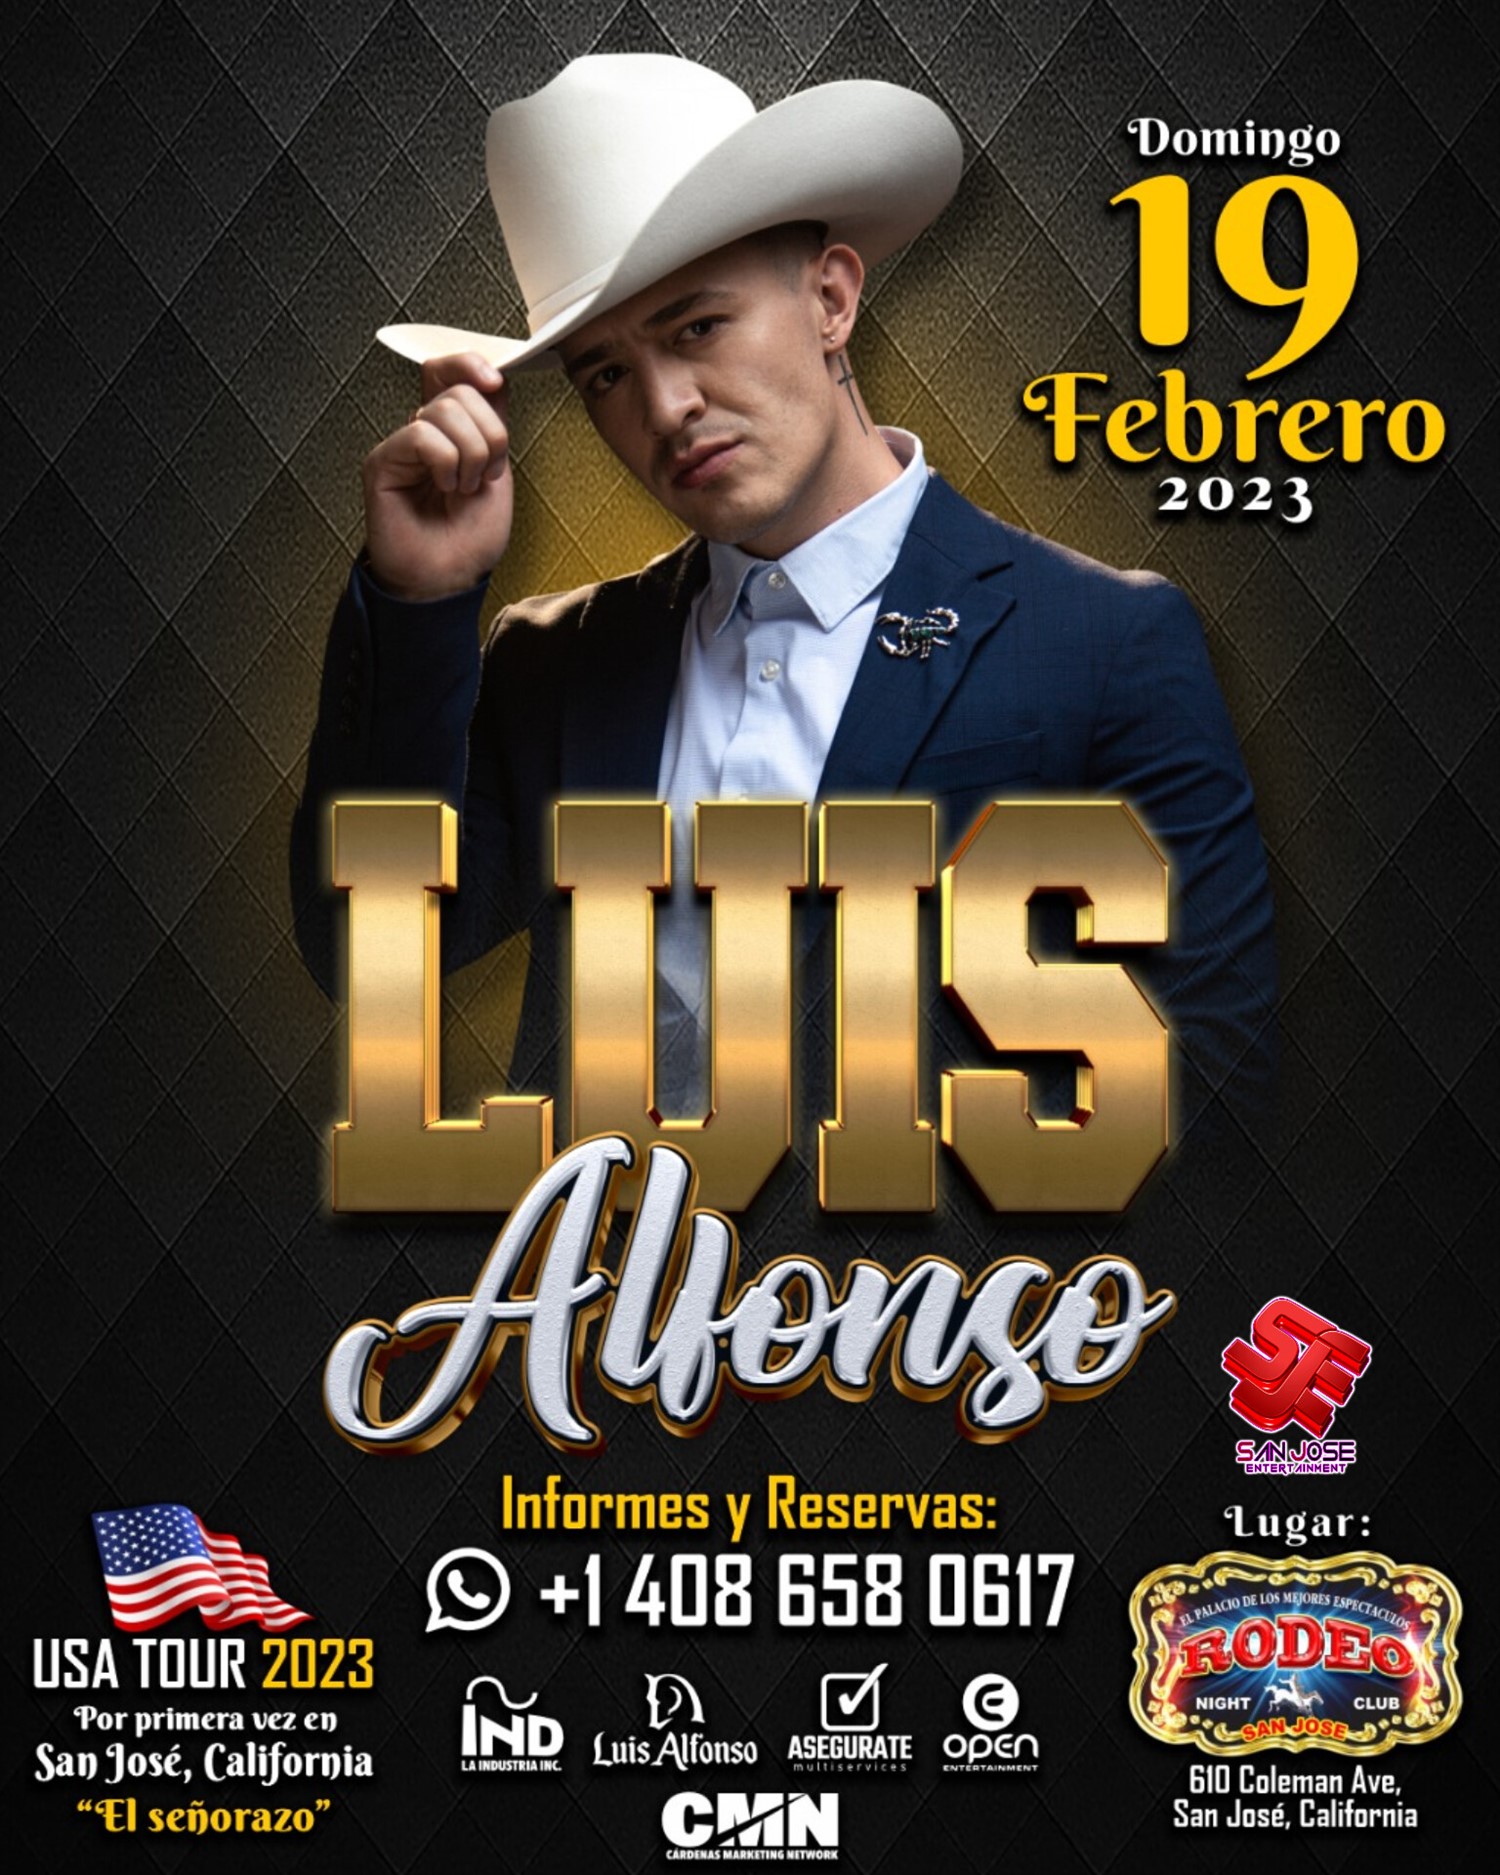 Luis Alfonso  on feb. 19, 18:00@Club Rodeo - Compra entradas y obtén información enelrodeorio.com sanjoseentertainment